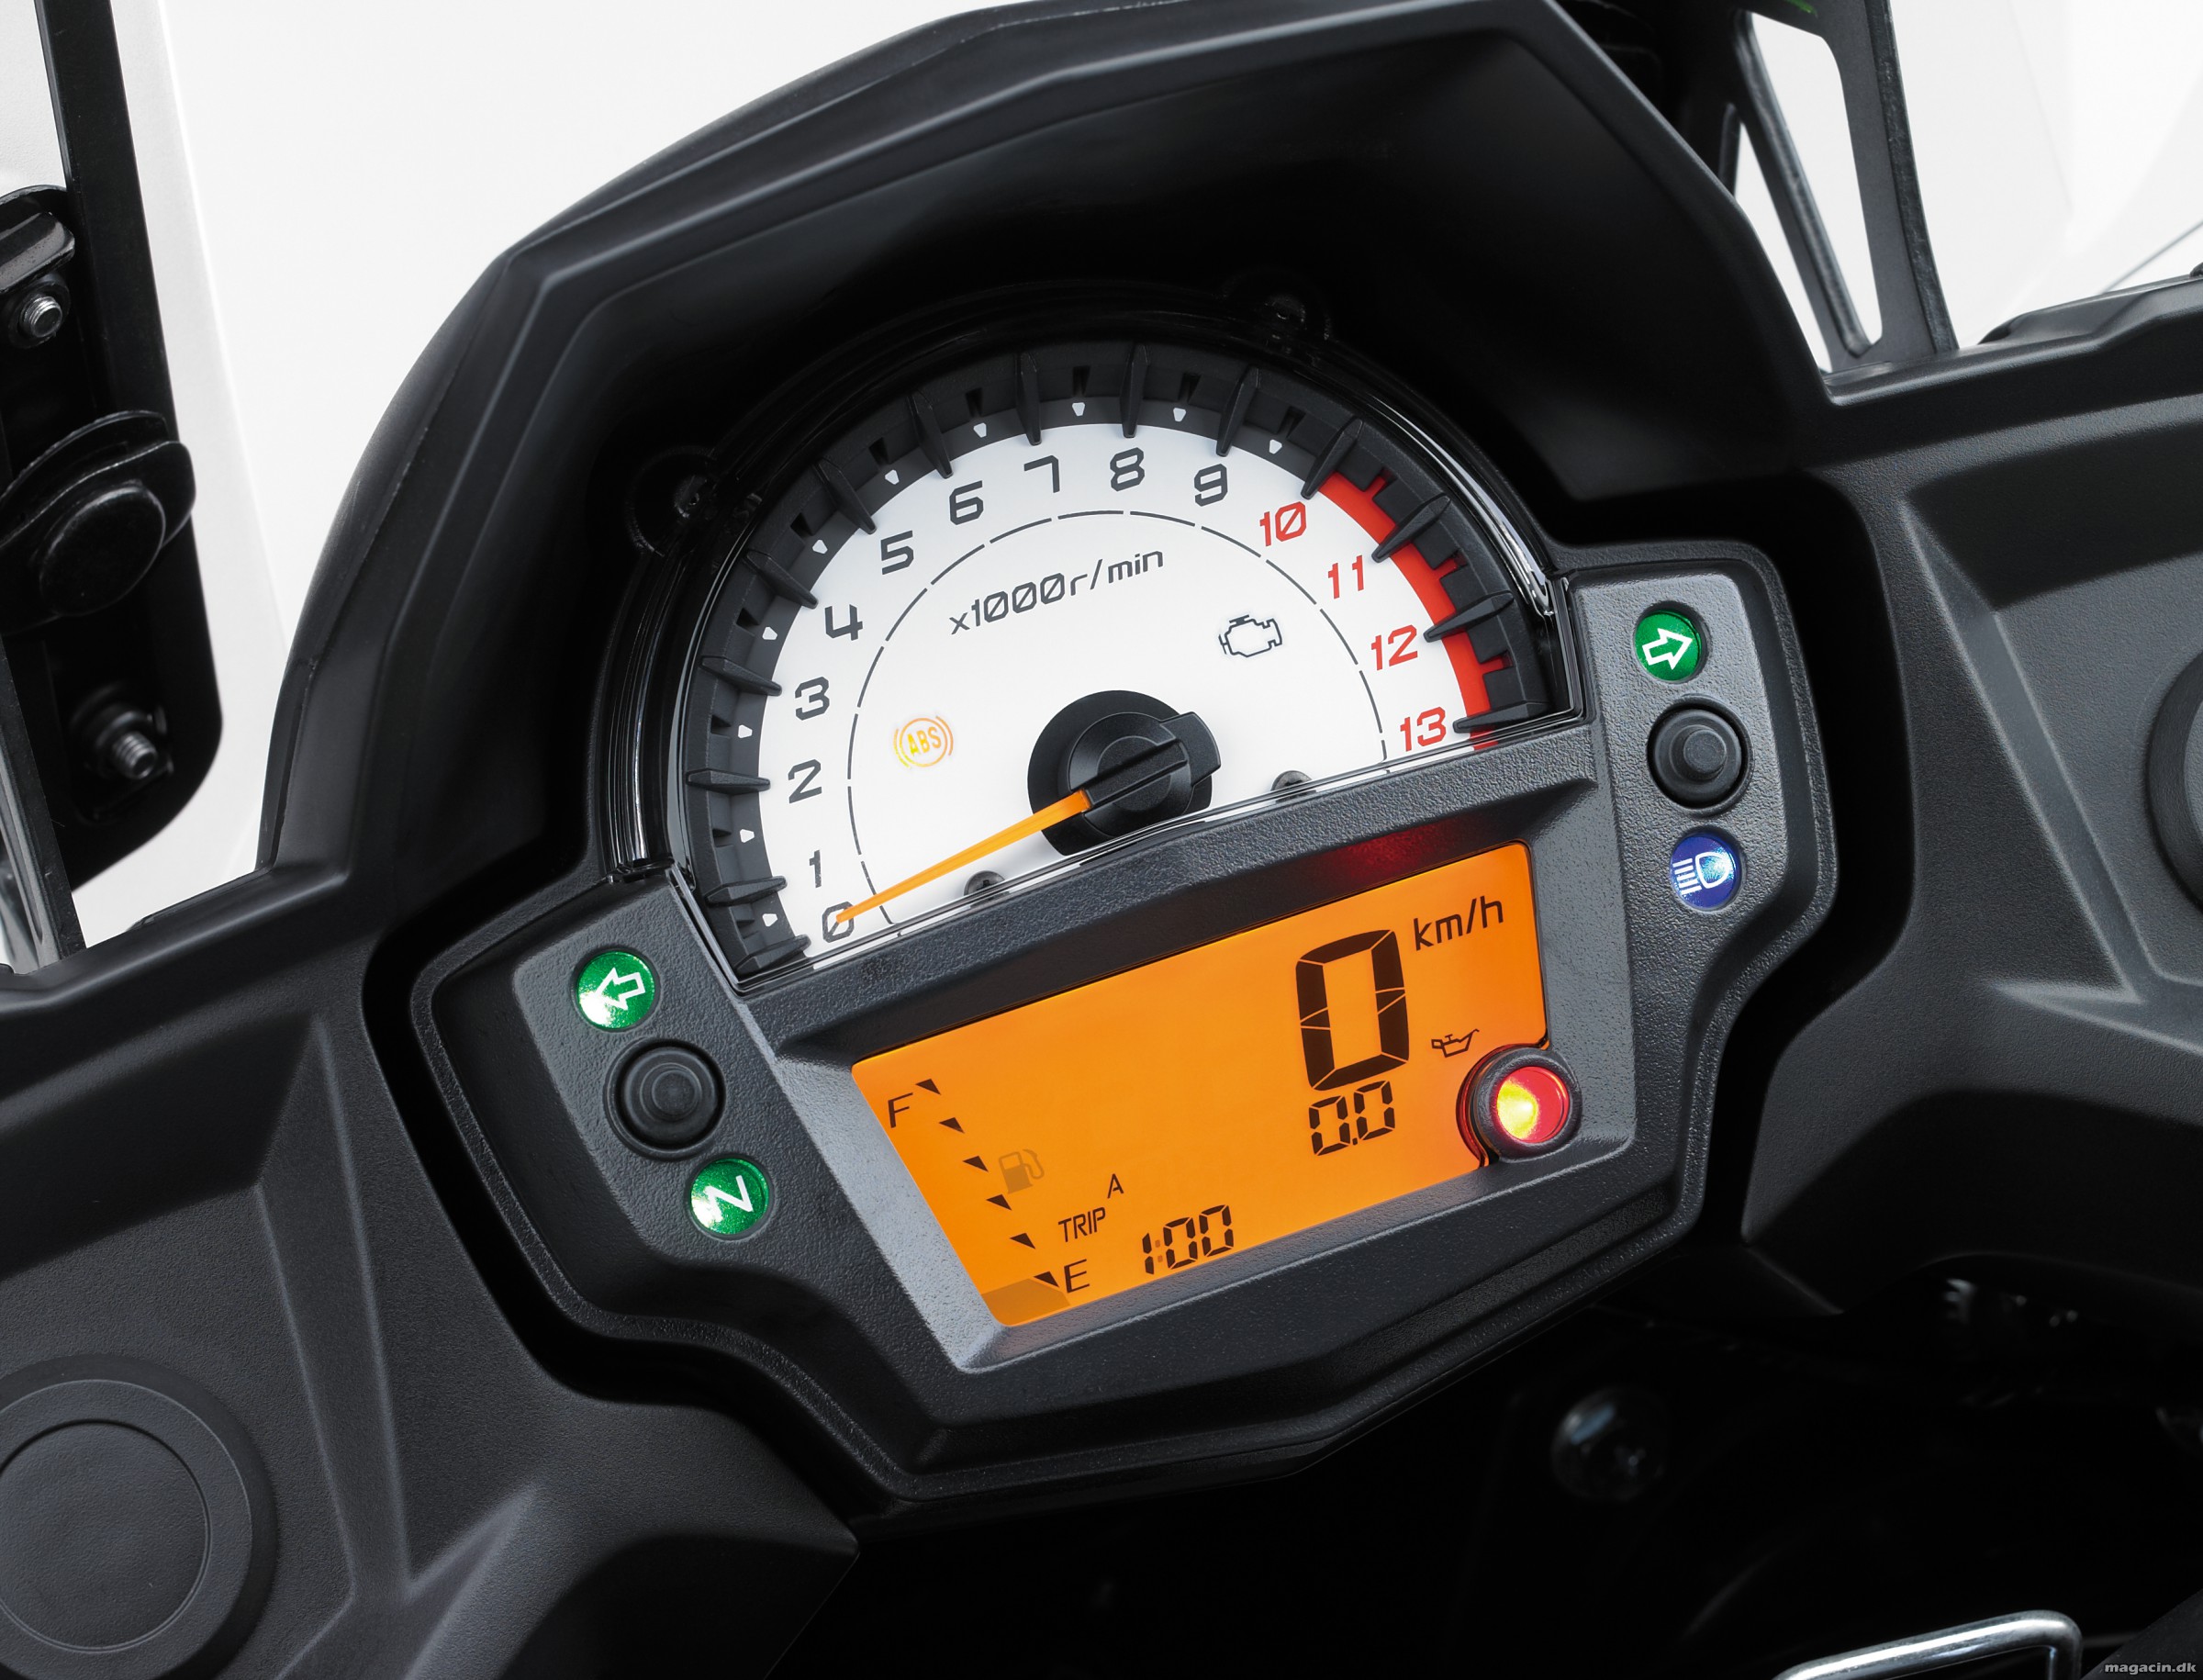 Test: 2015 Kawasaki Versys 650 – Værdi for hver en krone